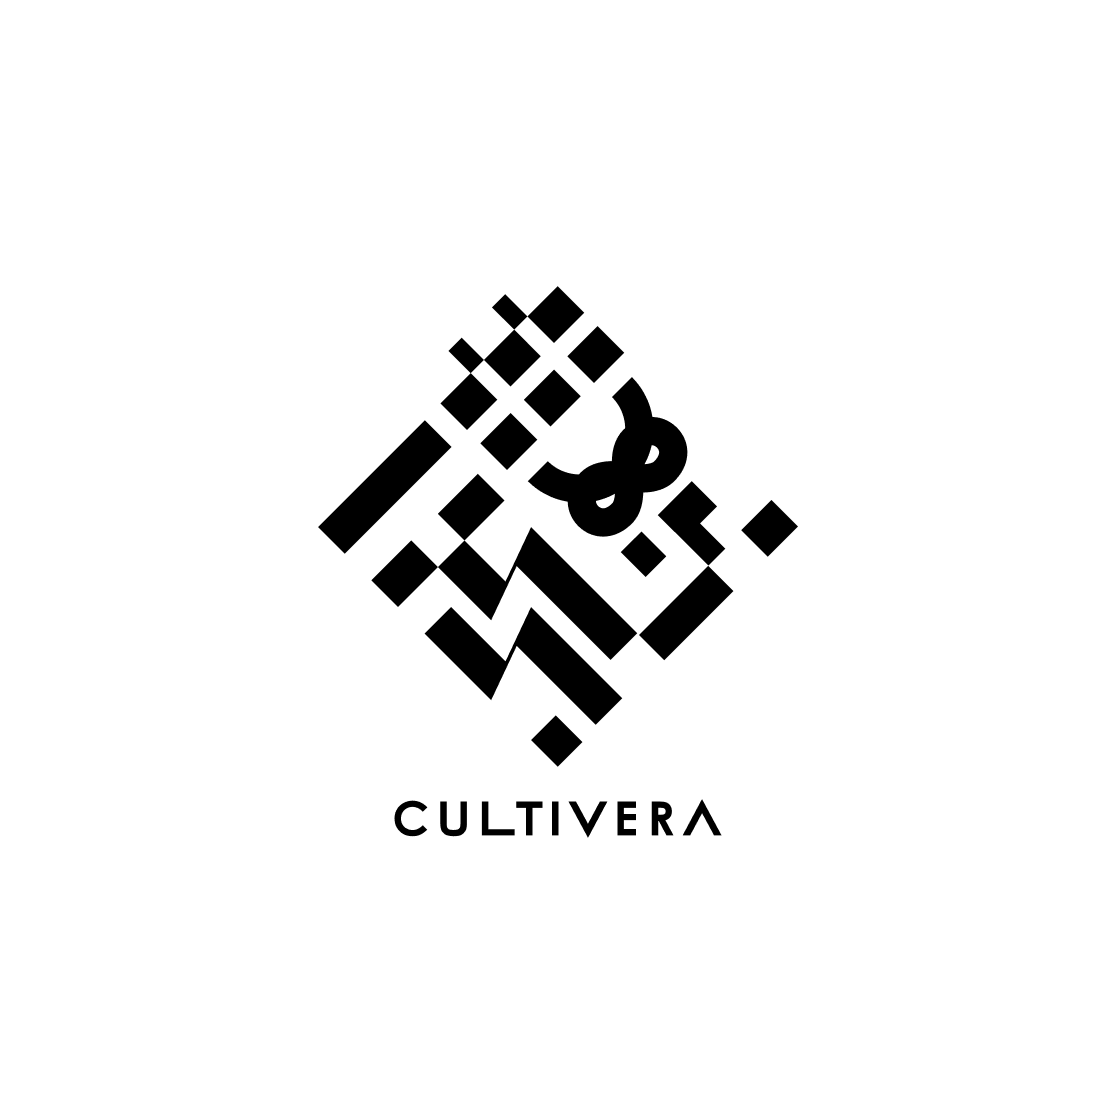 cultivera_logo